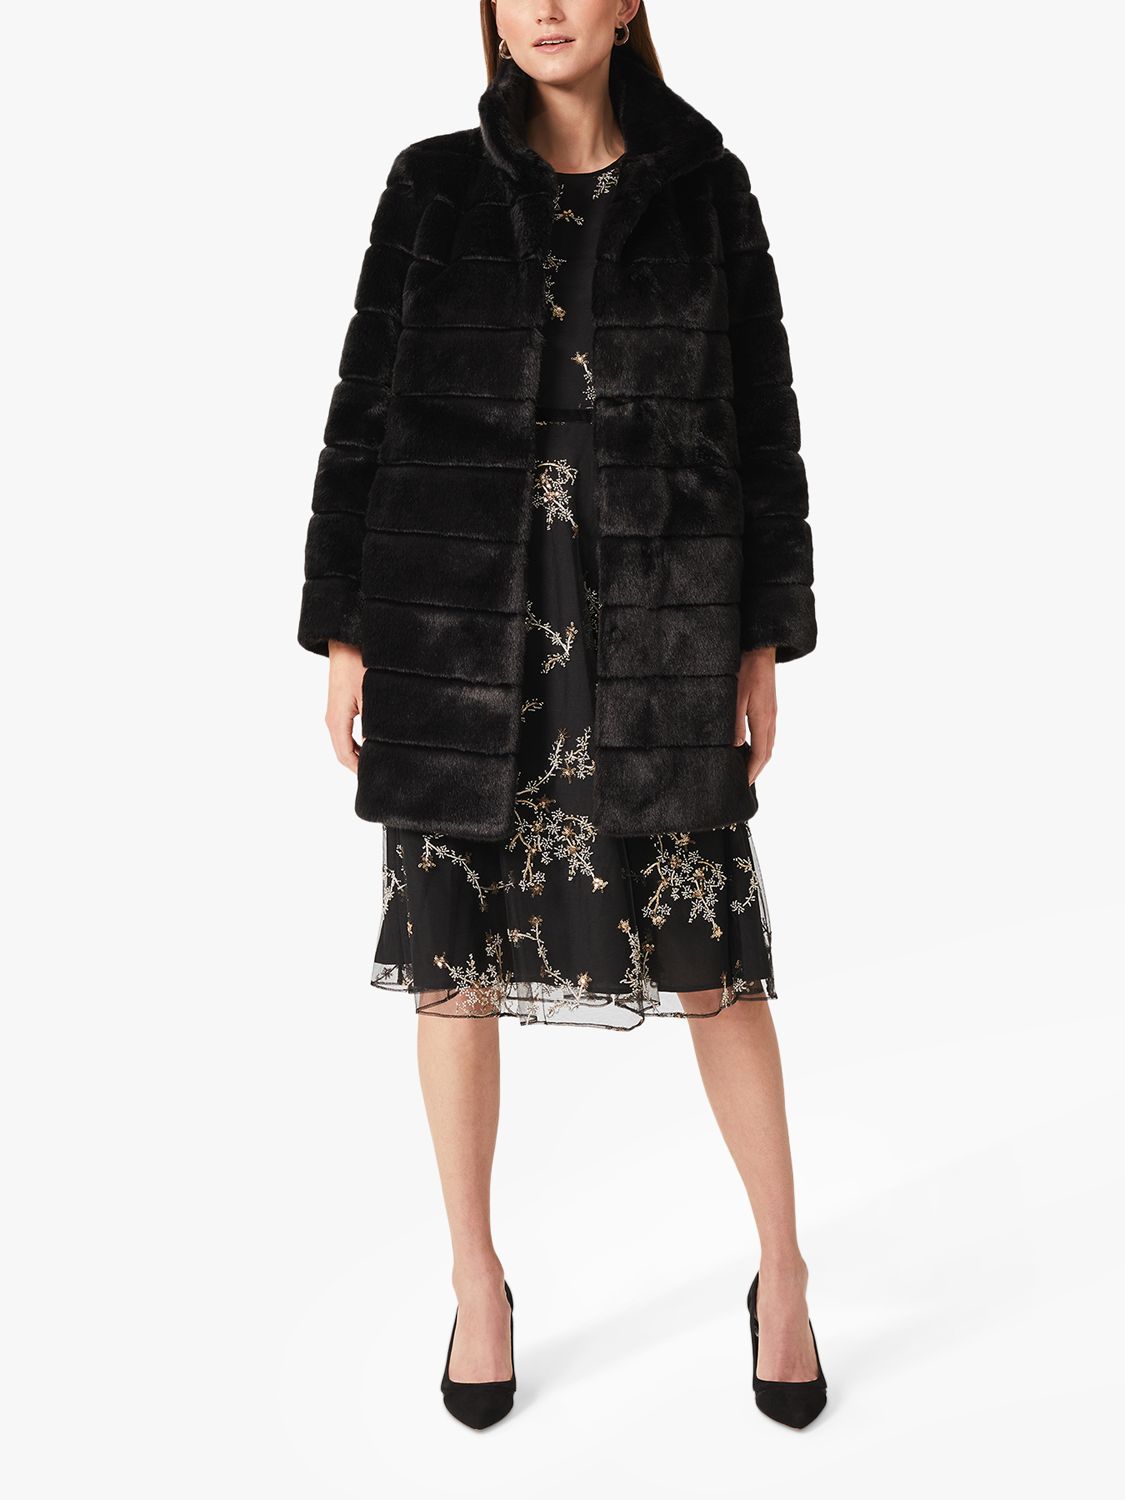 Hobbs Ros Faux Fur Coat, Black at John Lewis & Partners